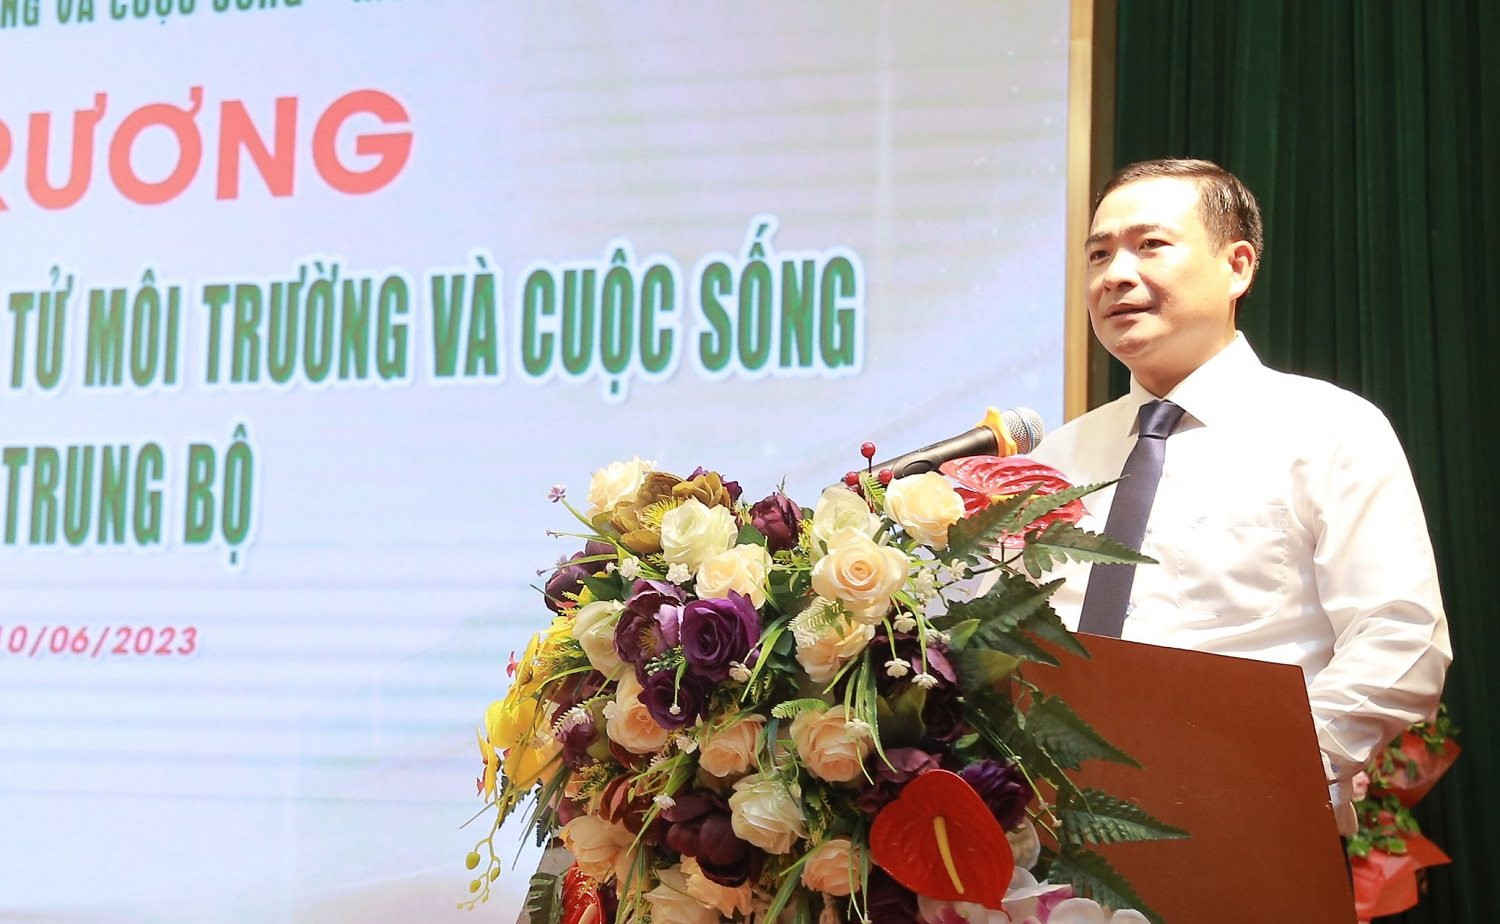 Ông Nguyễn Văn Toàn, Tổng biên tập Tạp chí điện tử Môi trường và Cuộc sống phát biểu tại buổi khai trương.